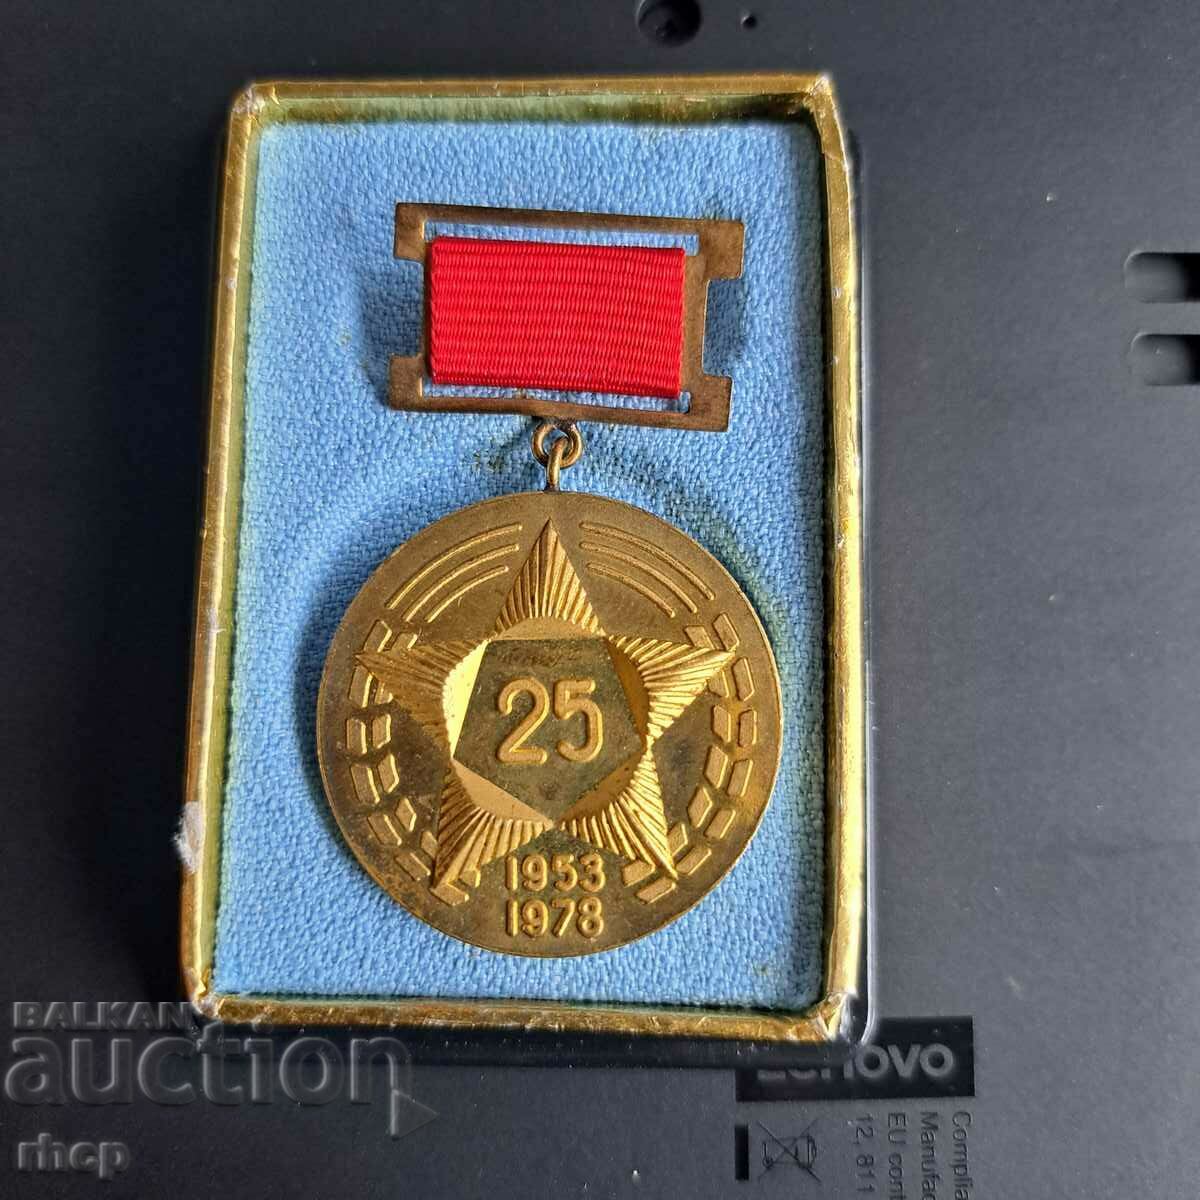 20 χρόνια Hlebozavod-1 Σόφια 1953-1978 μετάλλιο με κουτί